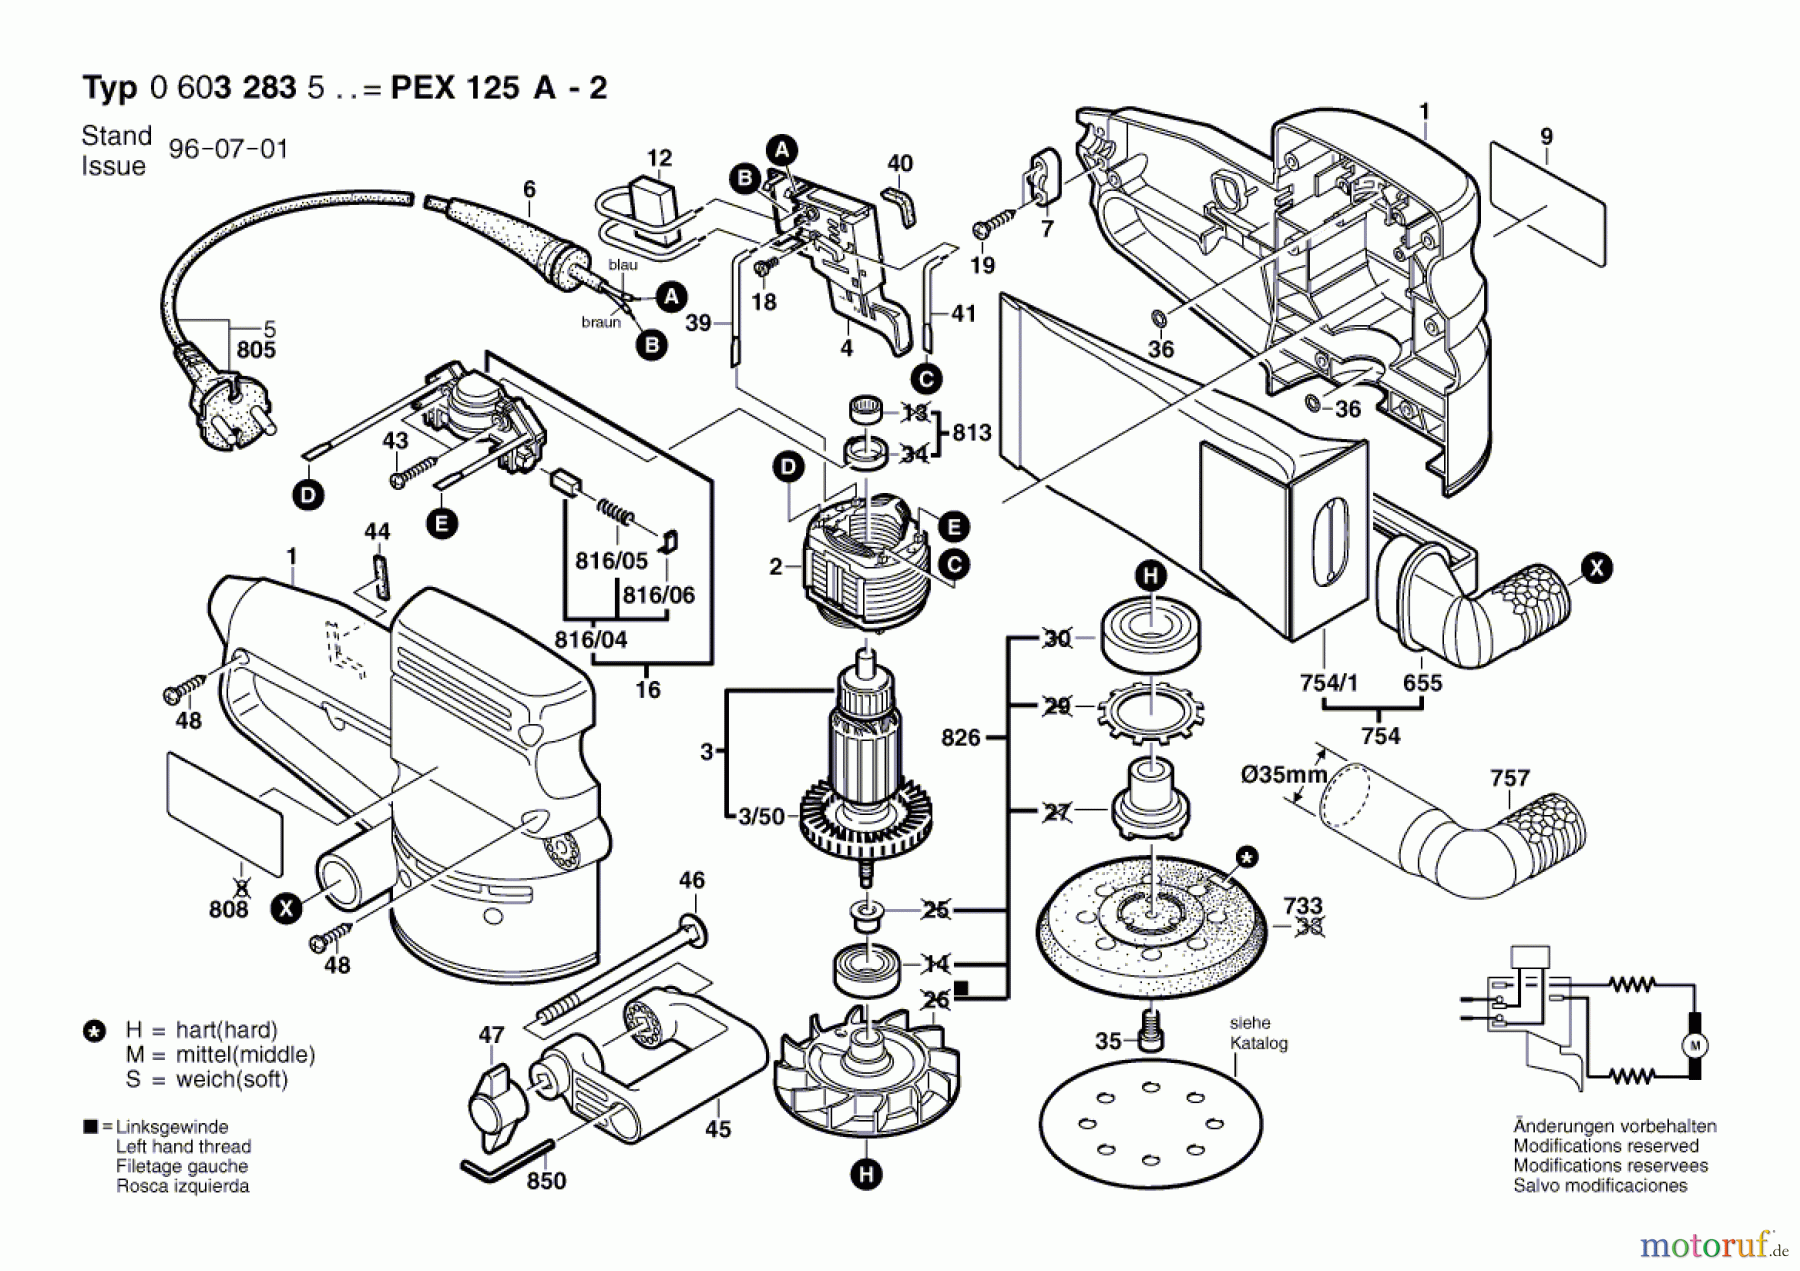  Bosch Werkzeug Exzenterschleifer PEX 125 A-2 Seite 1